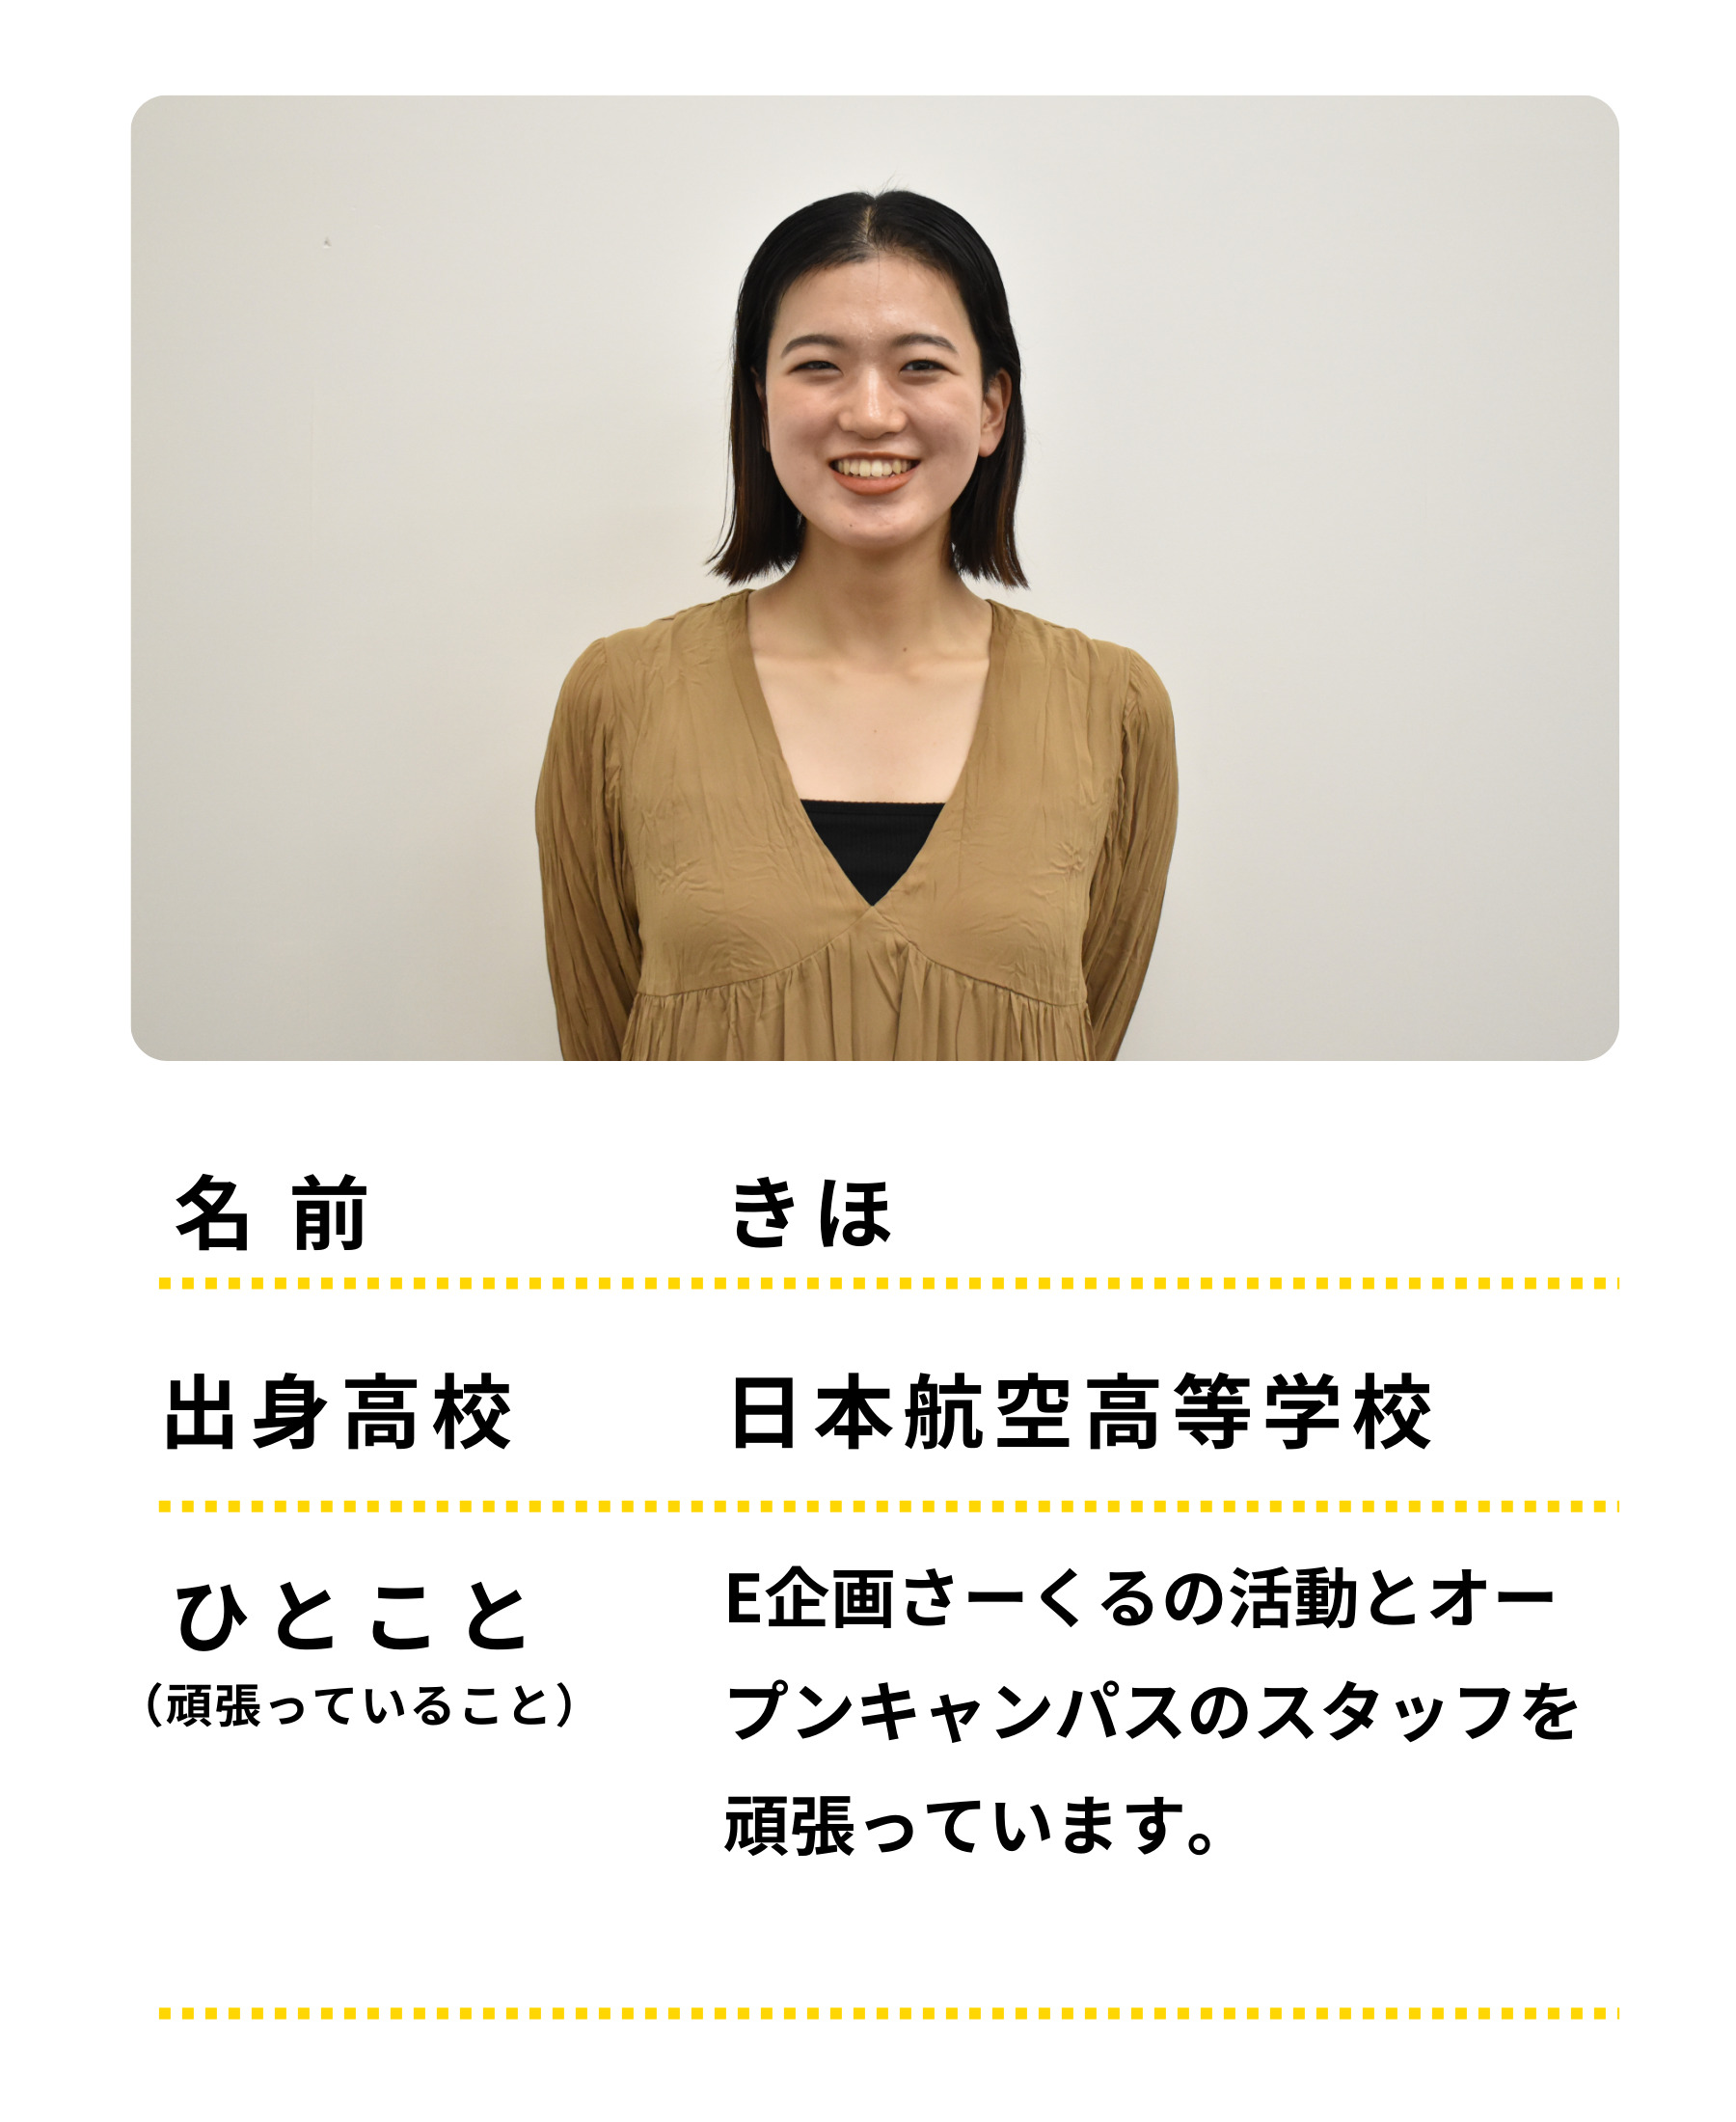 名前：きほ　出身高校：日本航空高等学校　ひとこと：E企画さーくるの活動とオープンキャンパススタッフを頑張っています。